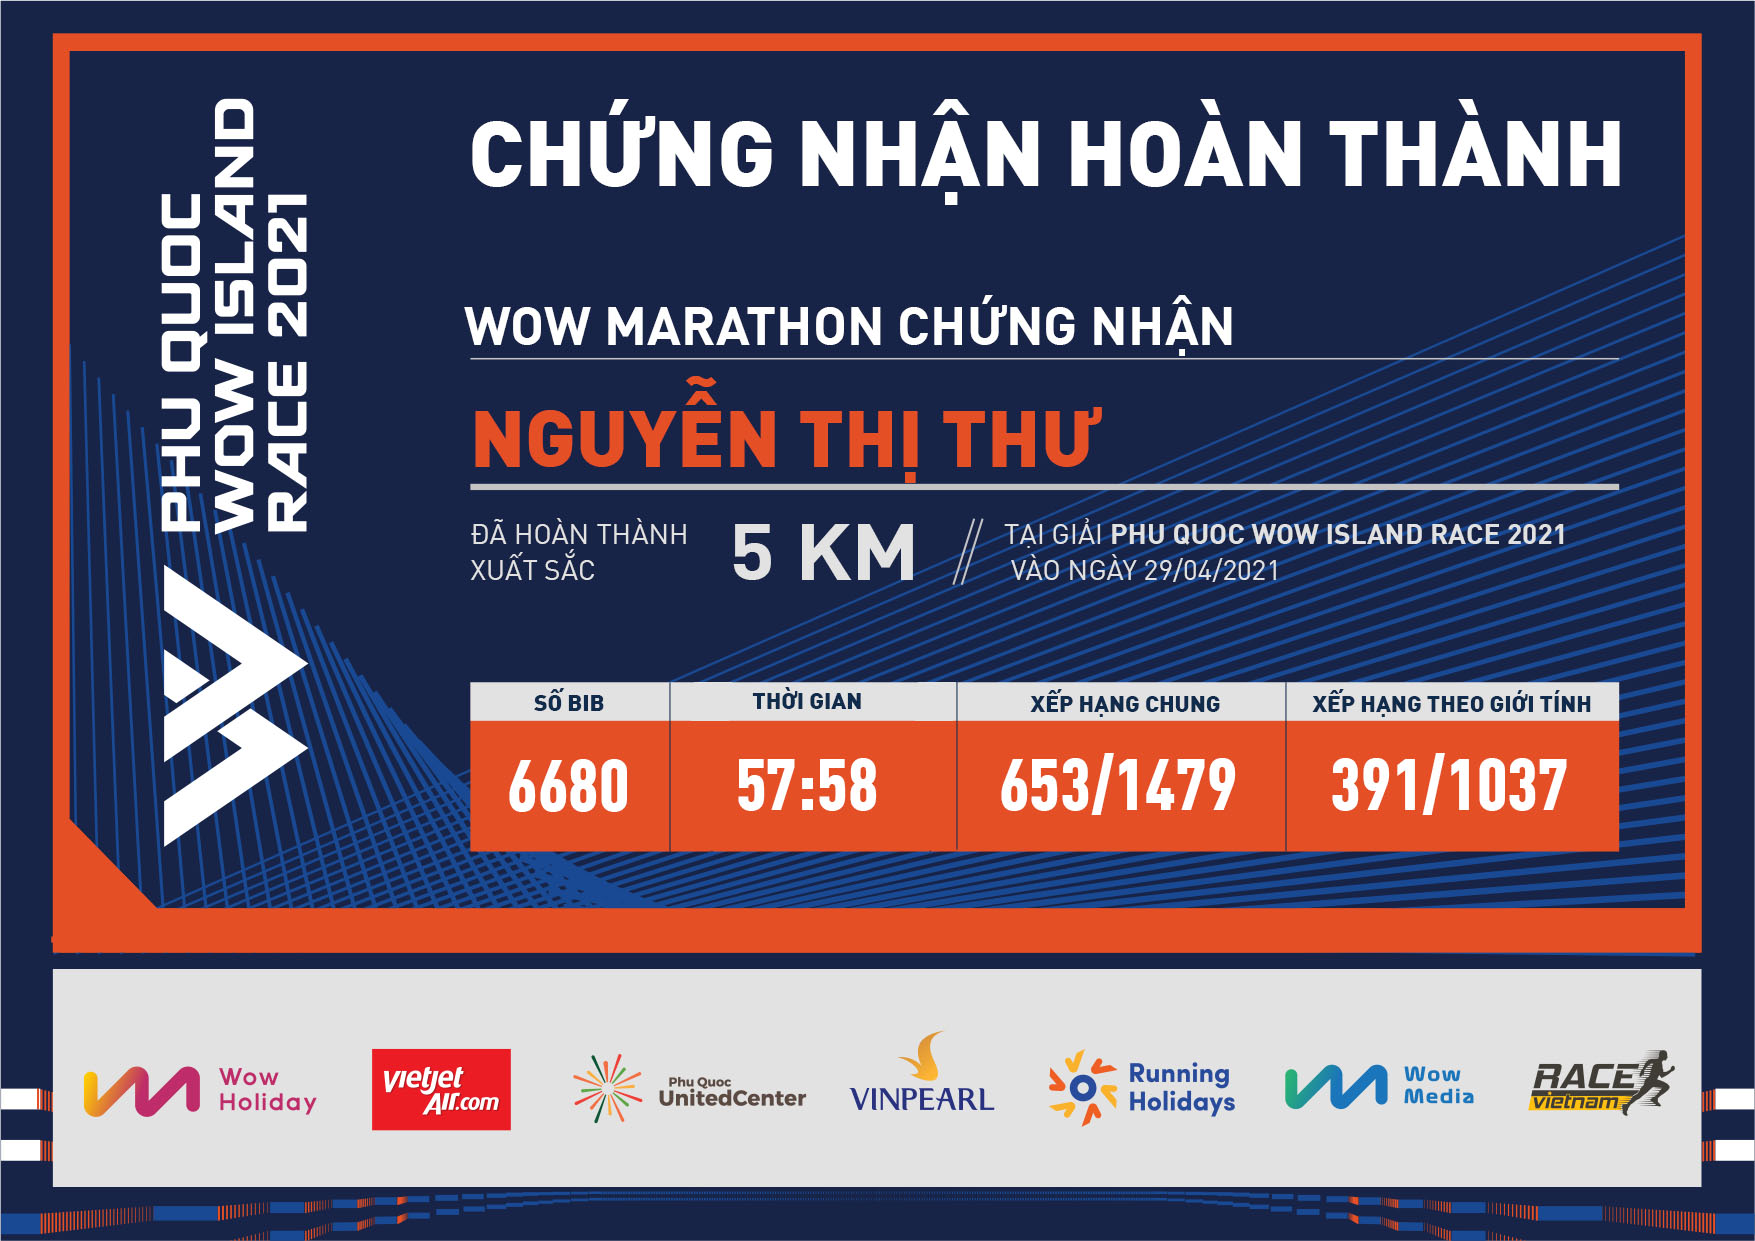 6680 - Nguyễn Thị Thư